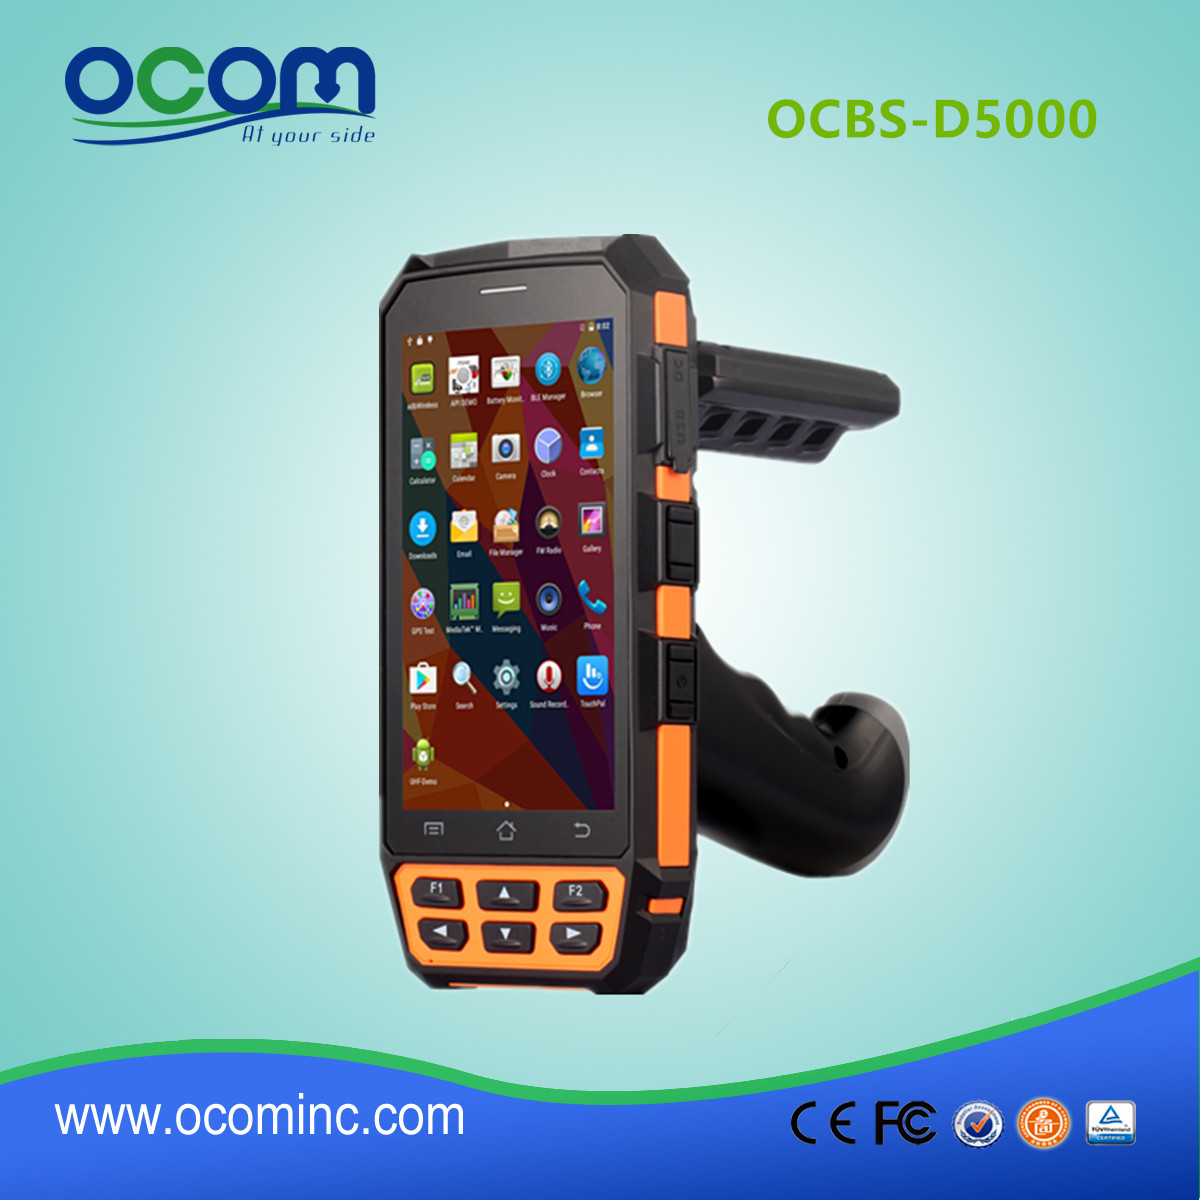 OCBS-D5000 portable ordinateur de poche terminal de collecte de données android appareil de transfert de données portatif